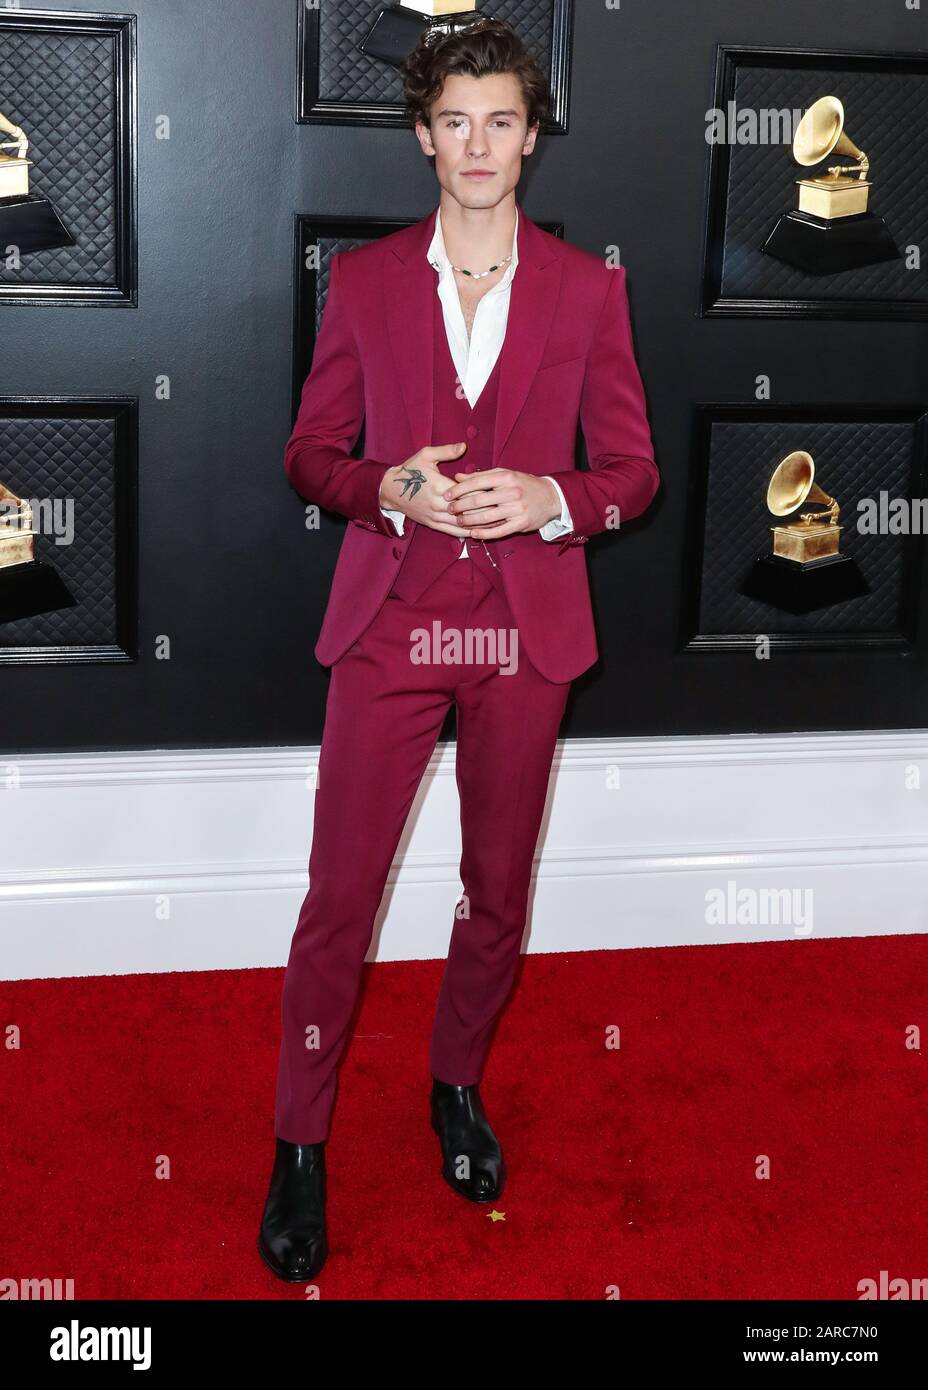 Los Angeles, Vereinigte Staaten. Januar 2020. Los ANGELES, KALIFORNIEN, USA  - 26. JANUAR: Sänger Shawn Mendes, der einen Louis Vuitton Anzug und  Bvlgari Schmuck trägt, kommt zu den 62. GRAMMY Awards, die